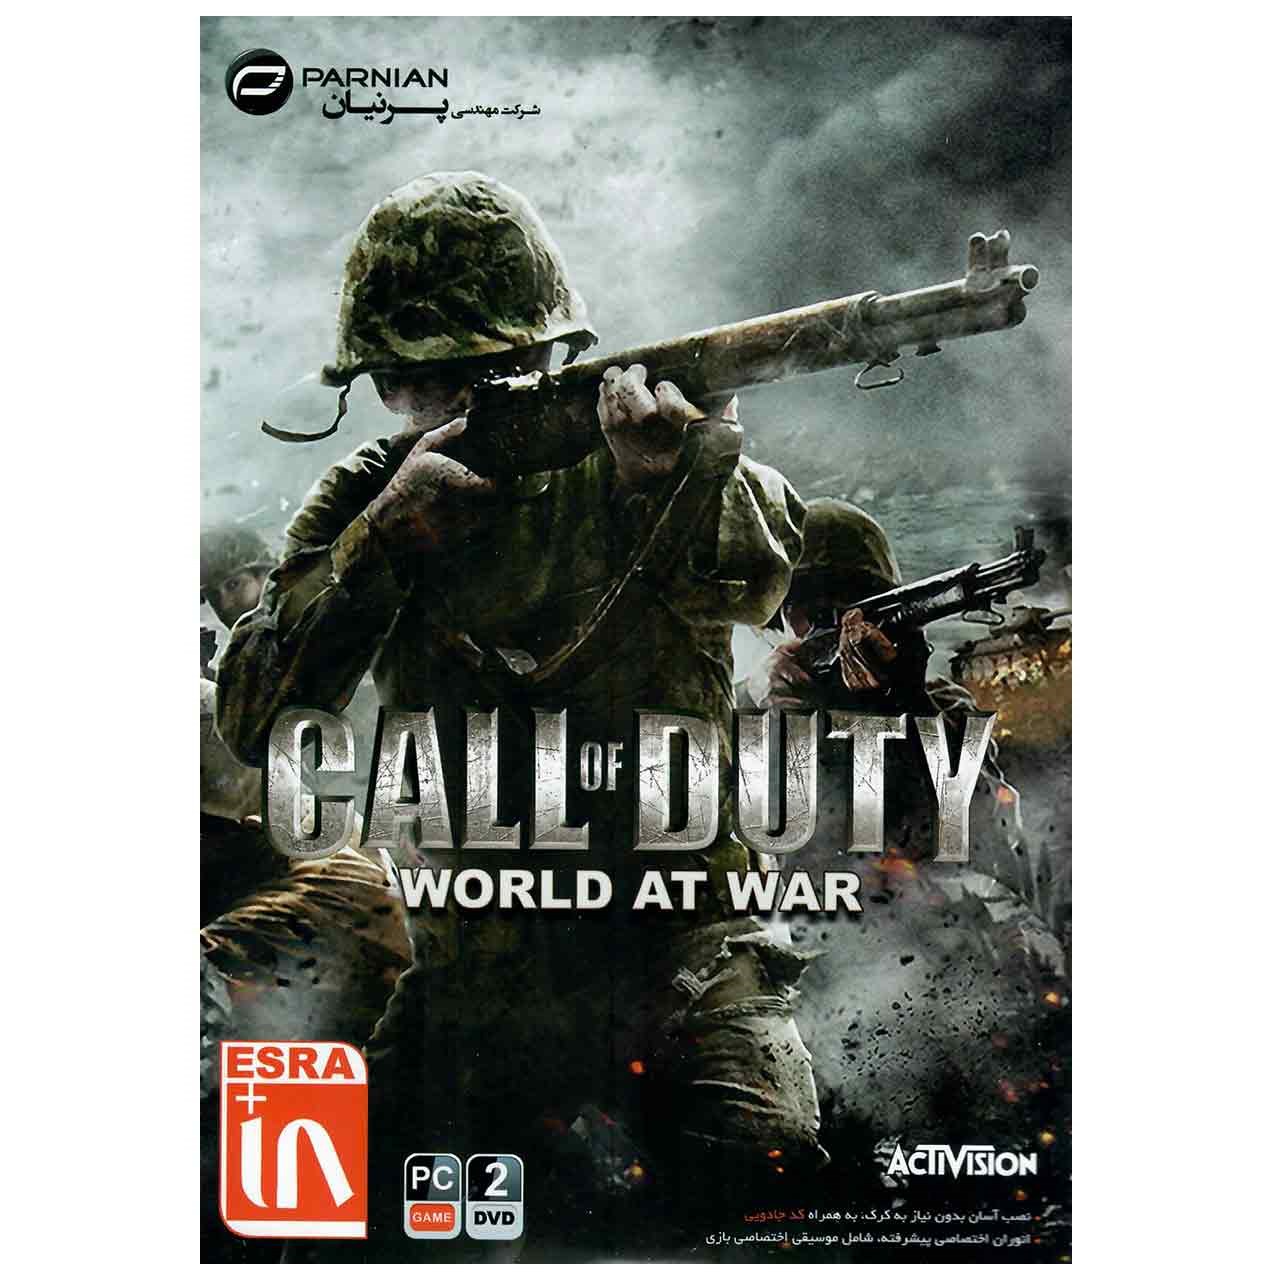 نقد و بررسی بازی Call Of Duty World AT War مخصوص PC توسط خریداران